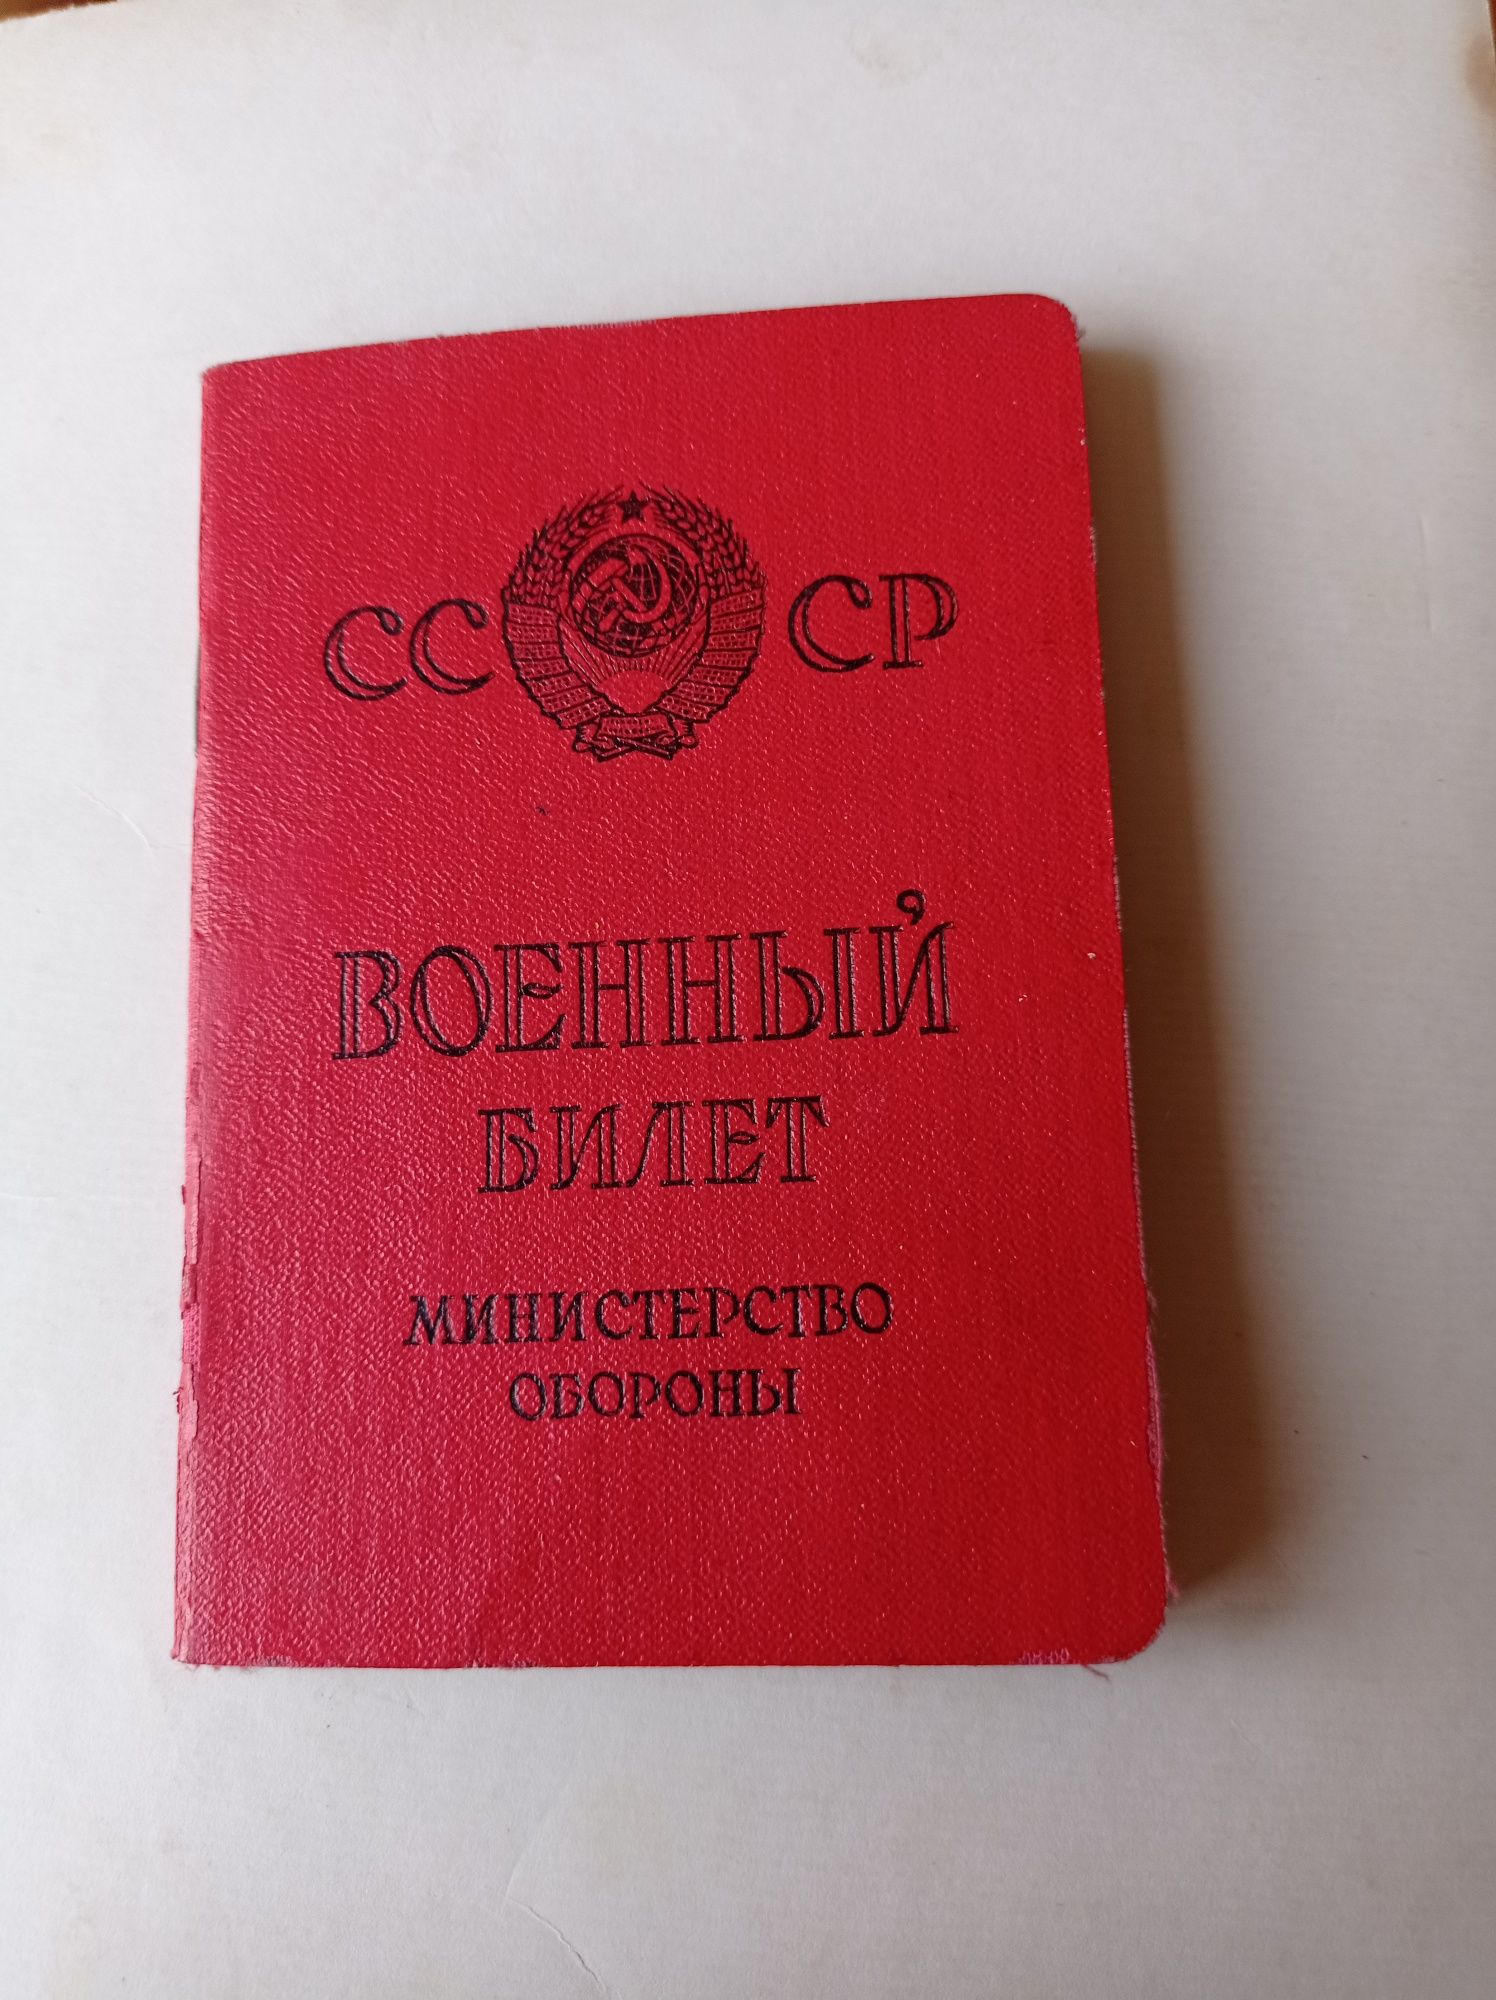 Грамоты, профсоюзные, военный билет СССР